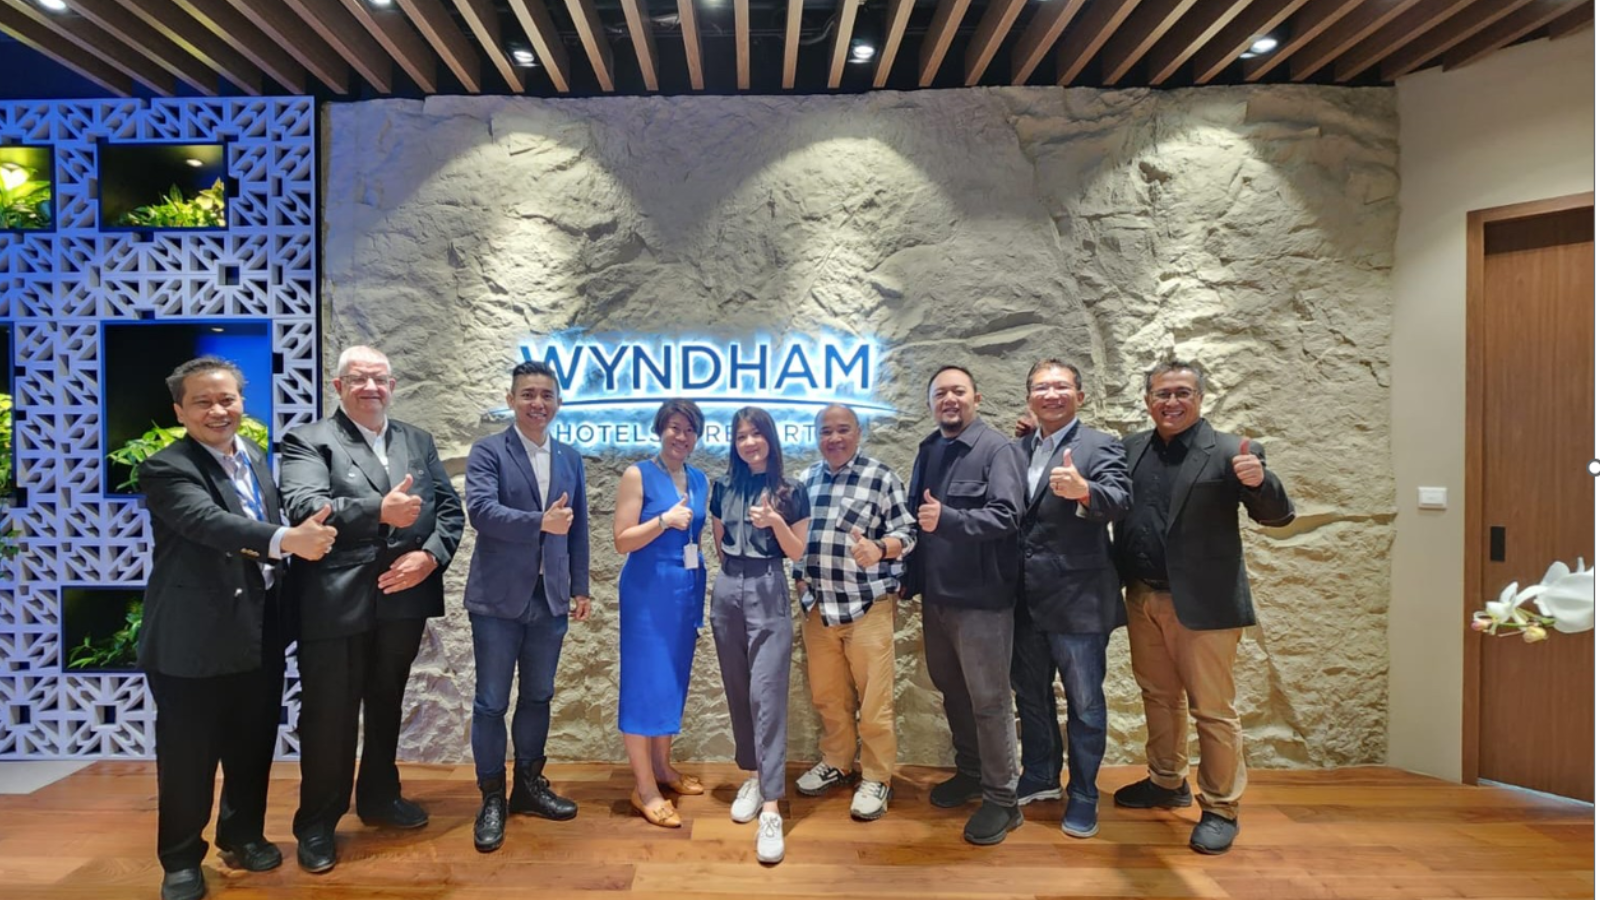 Wyndham Hotels